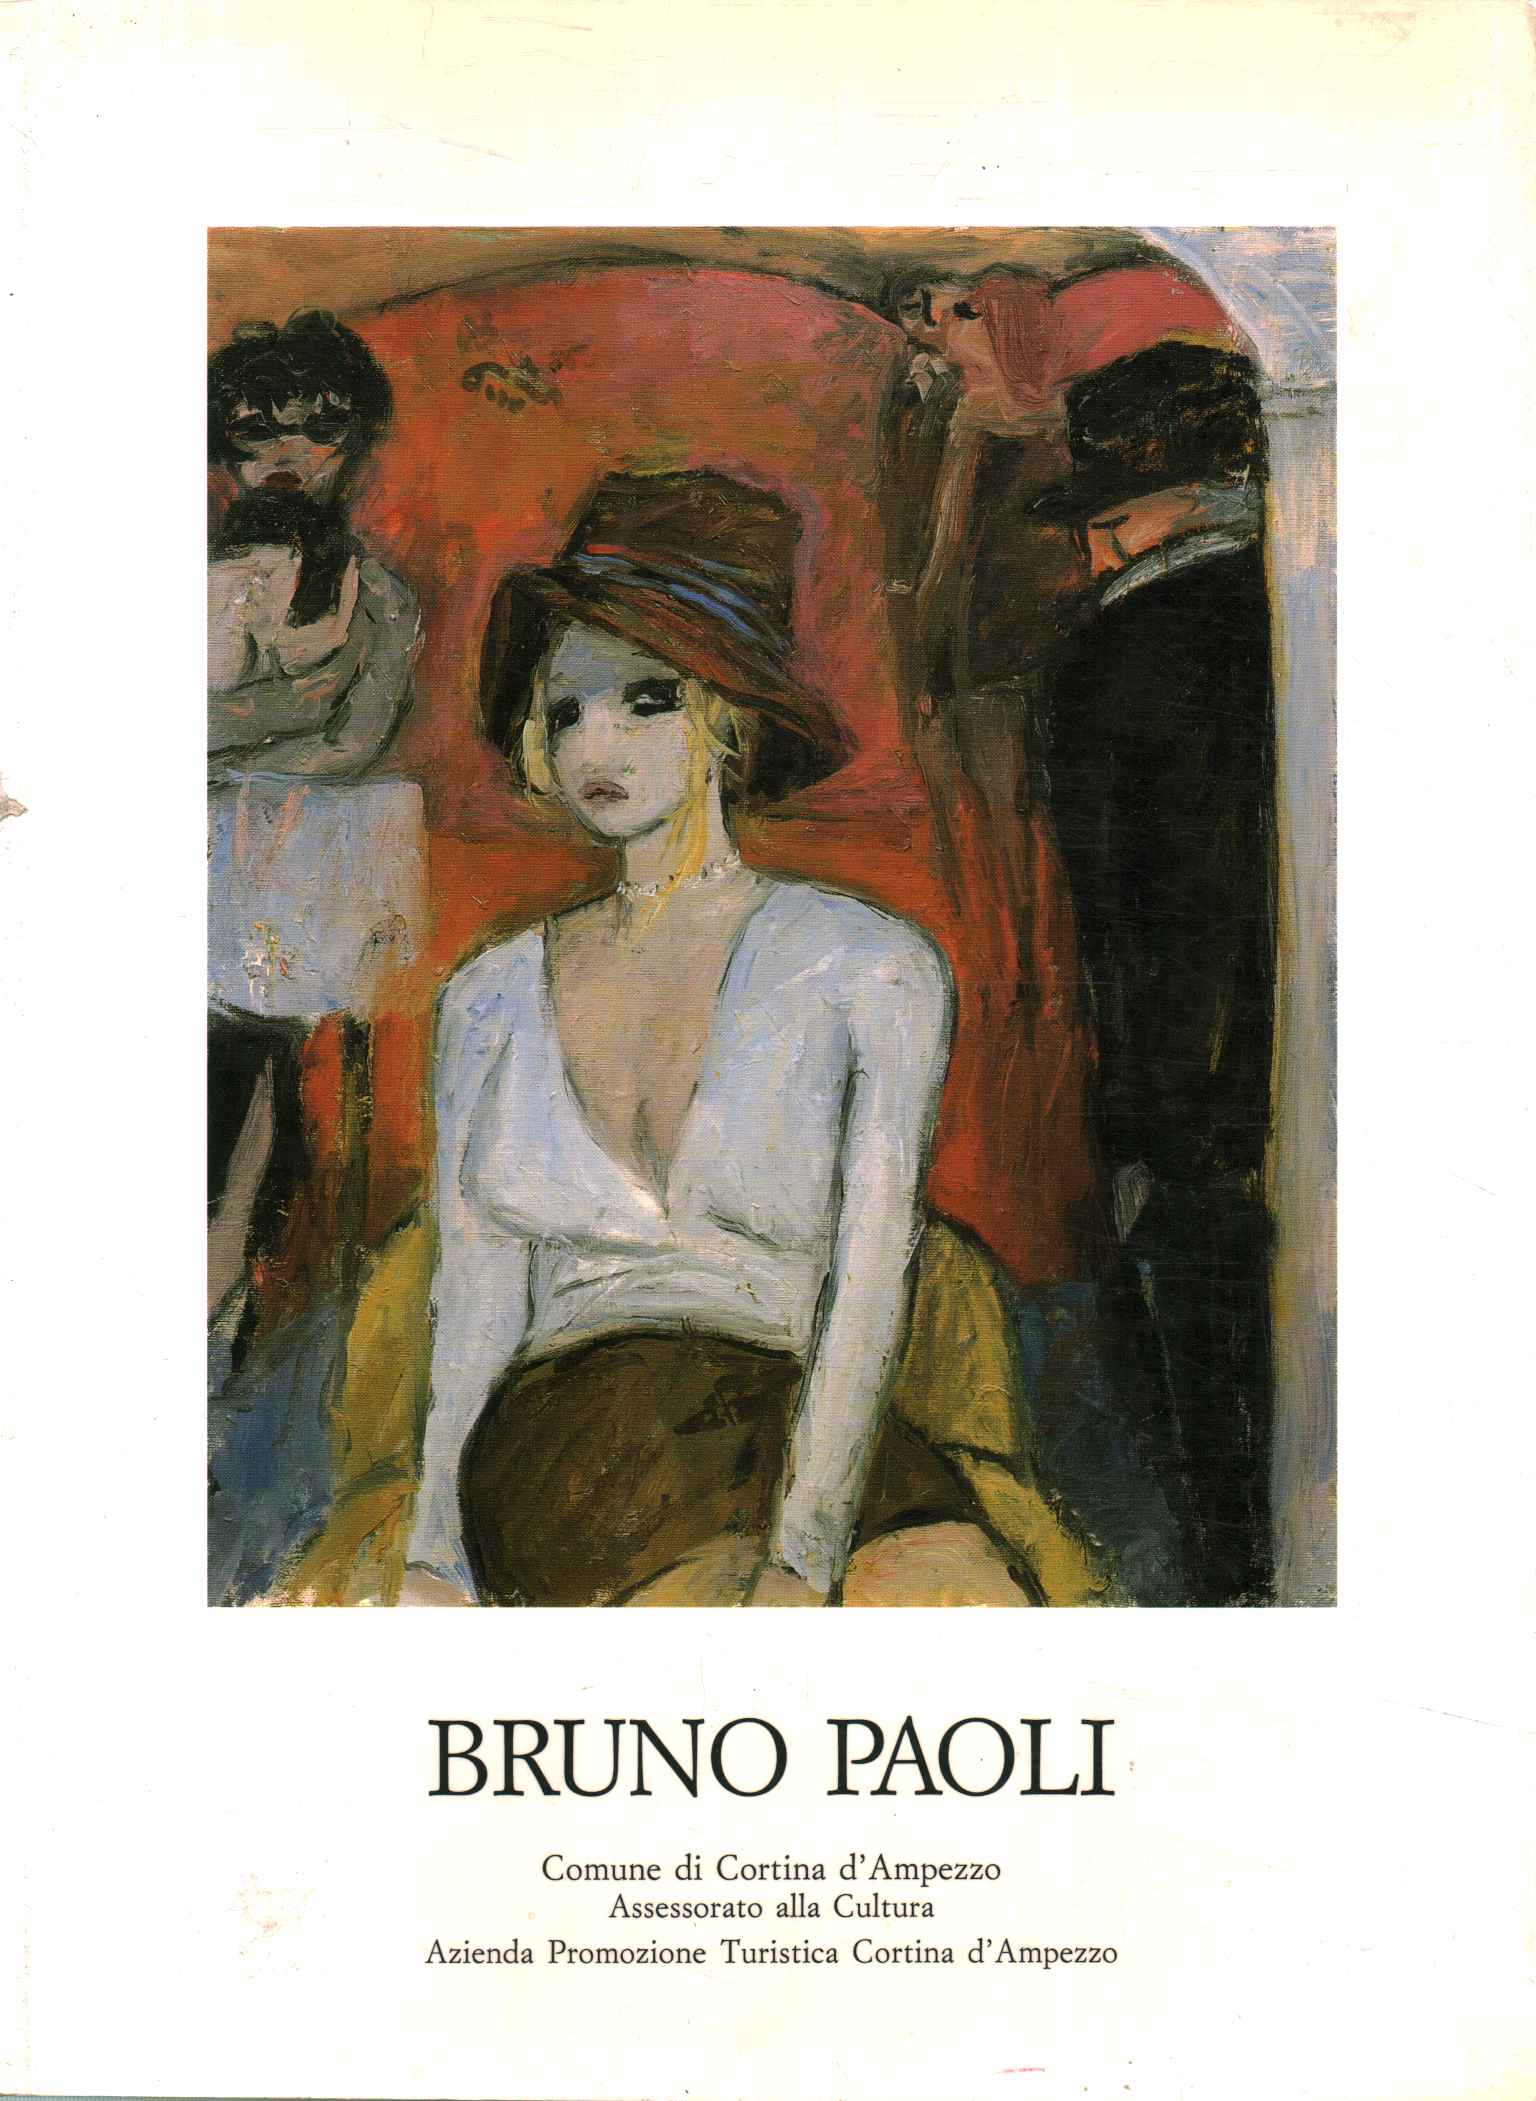 Bruno Paoli. Figuras en un interior.